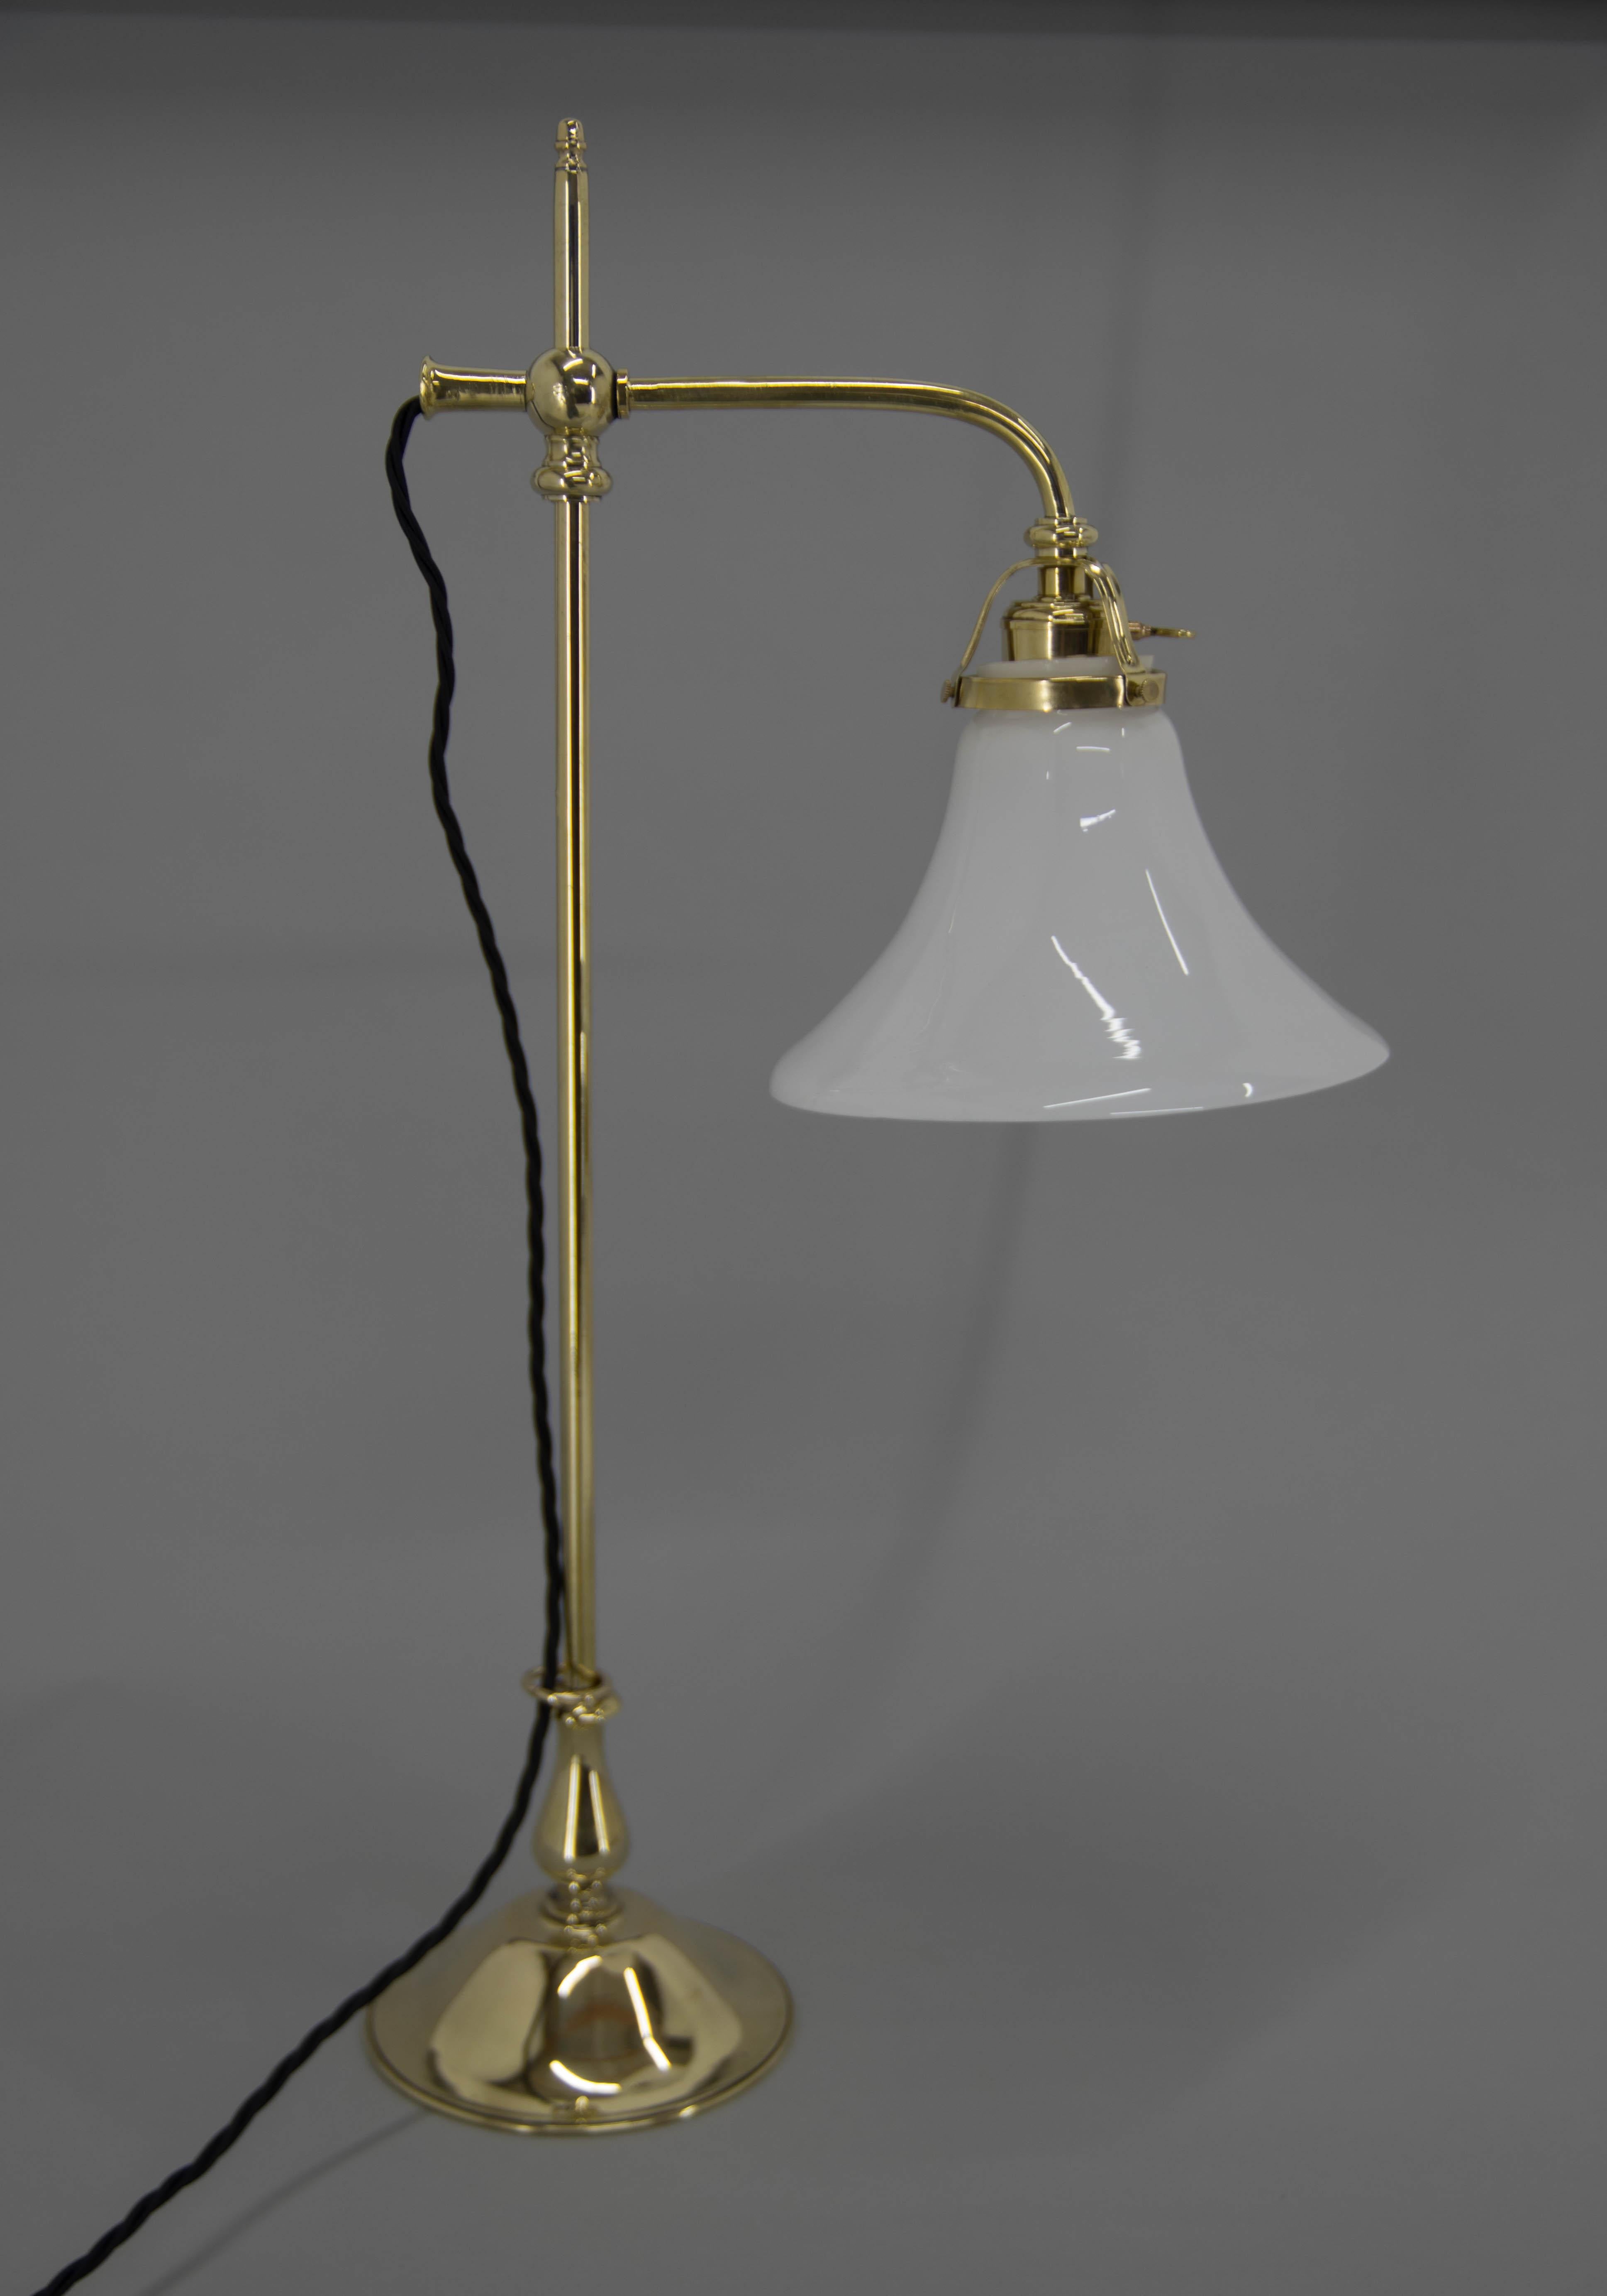 Belle lampe de table Art Nouveau.
Entièrement restauré, laiton remis à neuf
Câblé. 1x40W, ampoule E25-E27
Adaptateur pour prise américaine inclus.